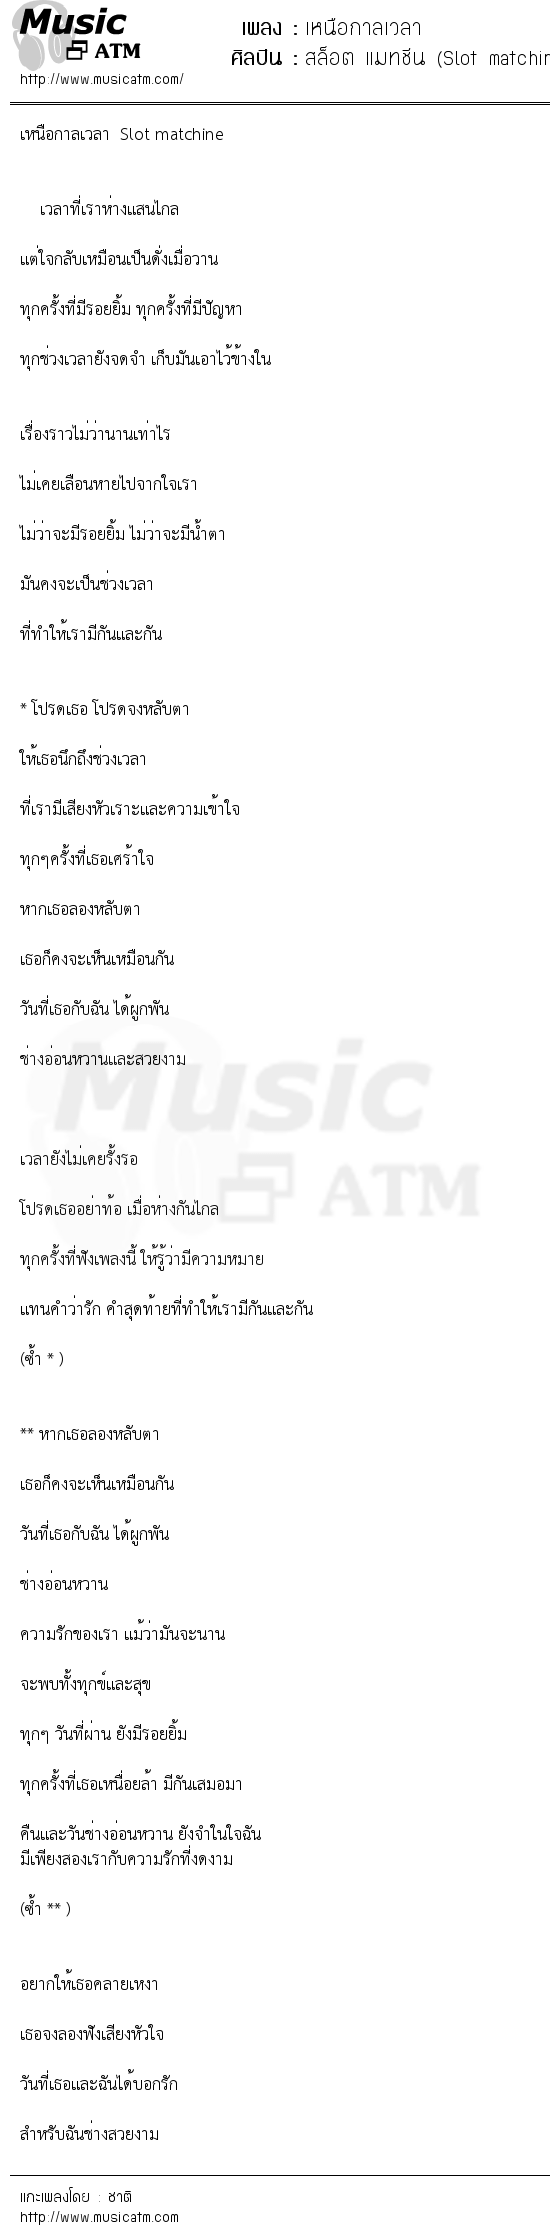 เนื้อเพลง เหนือกาลเวลา - สล็อต แมทชีน (Slot matchine) | เพลงไทย